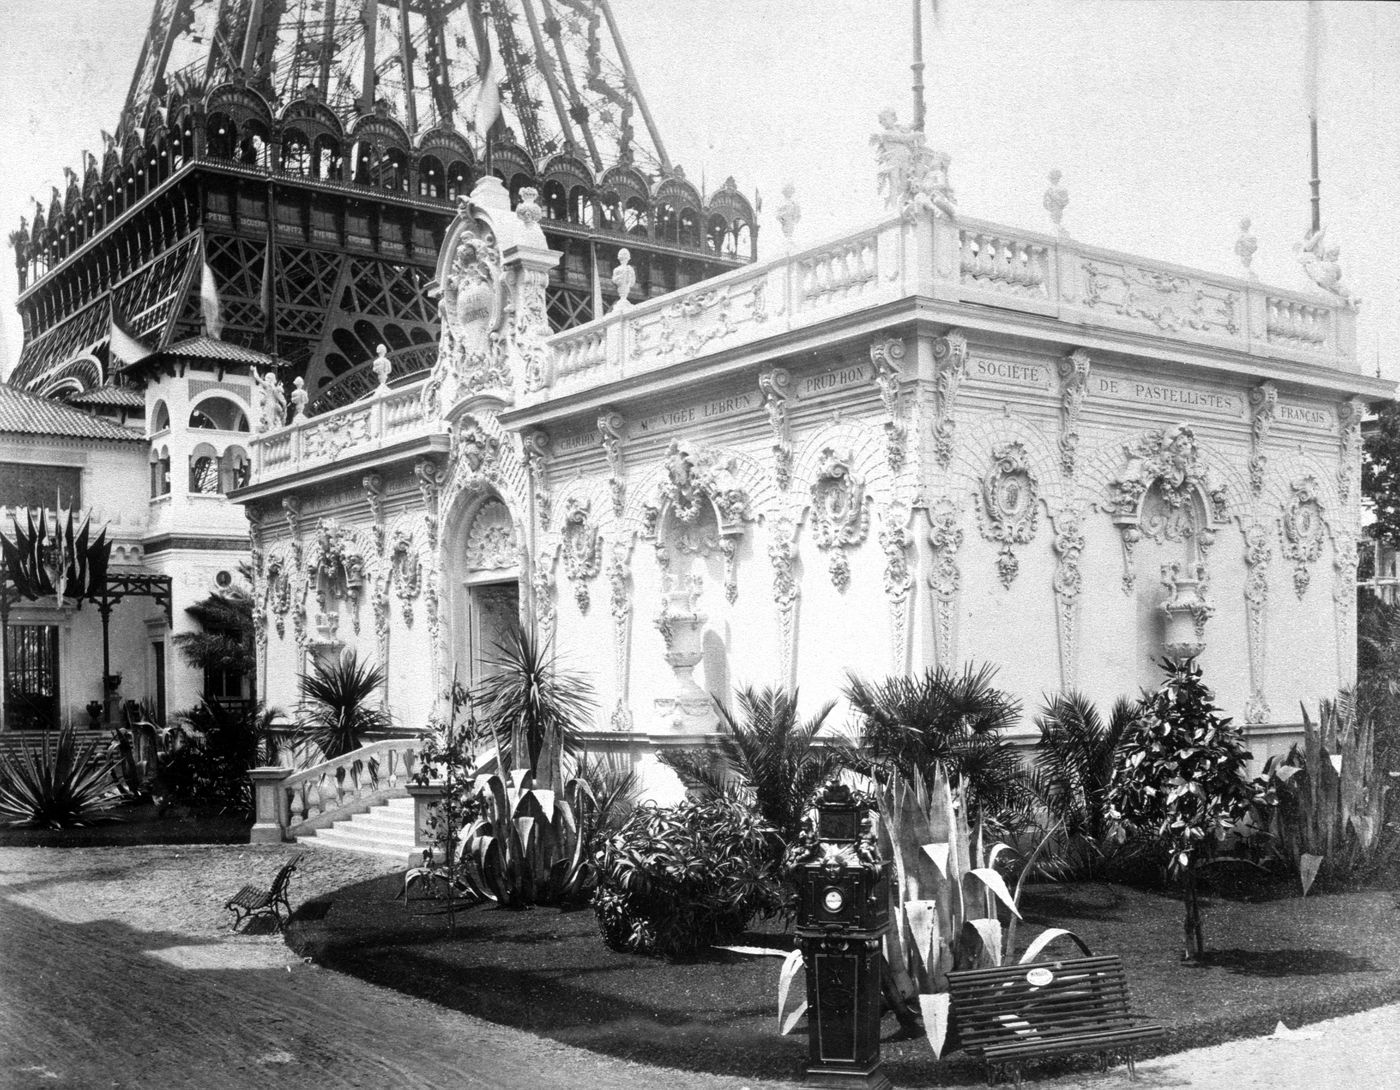 Exposition universelle de 1889 (Paris, France): View of Pavillon de la Société des Pastellistes Français